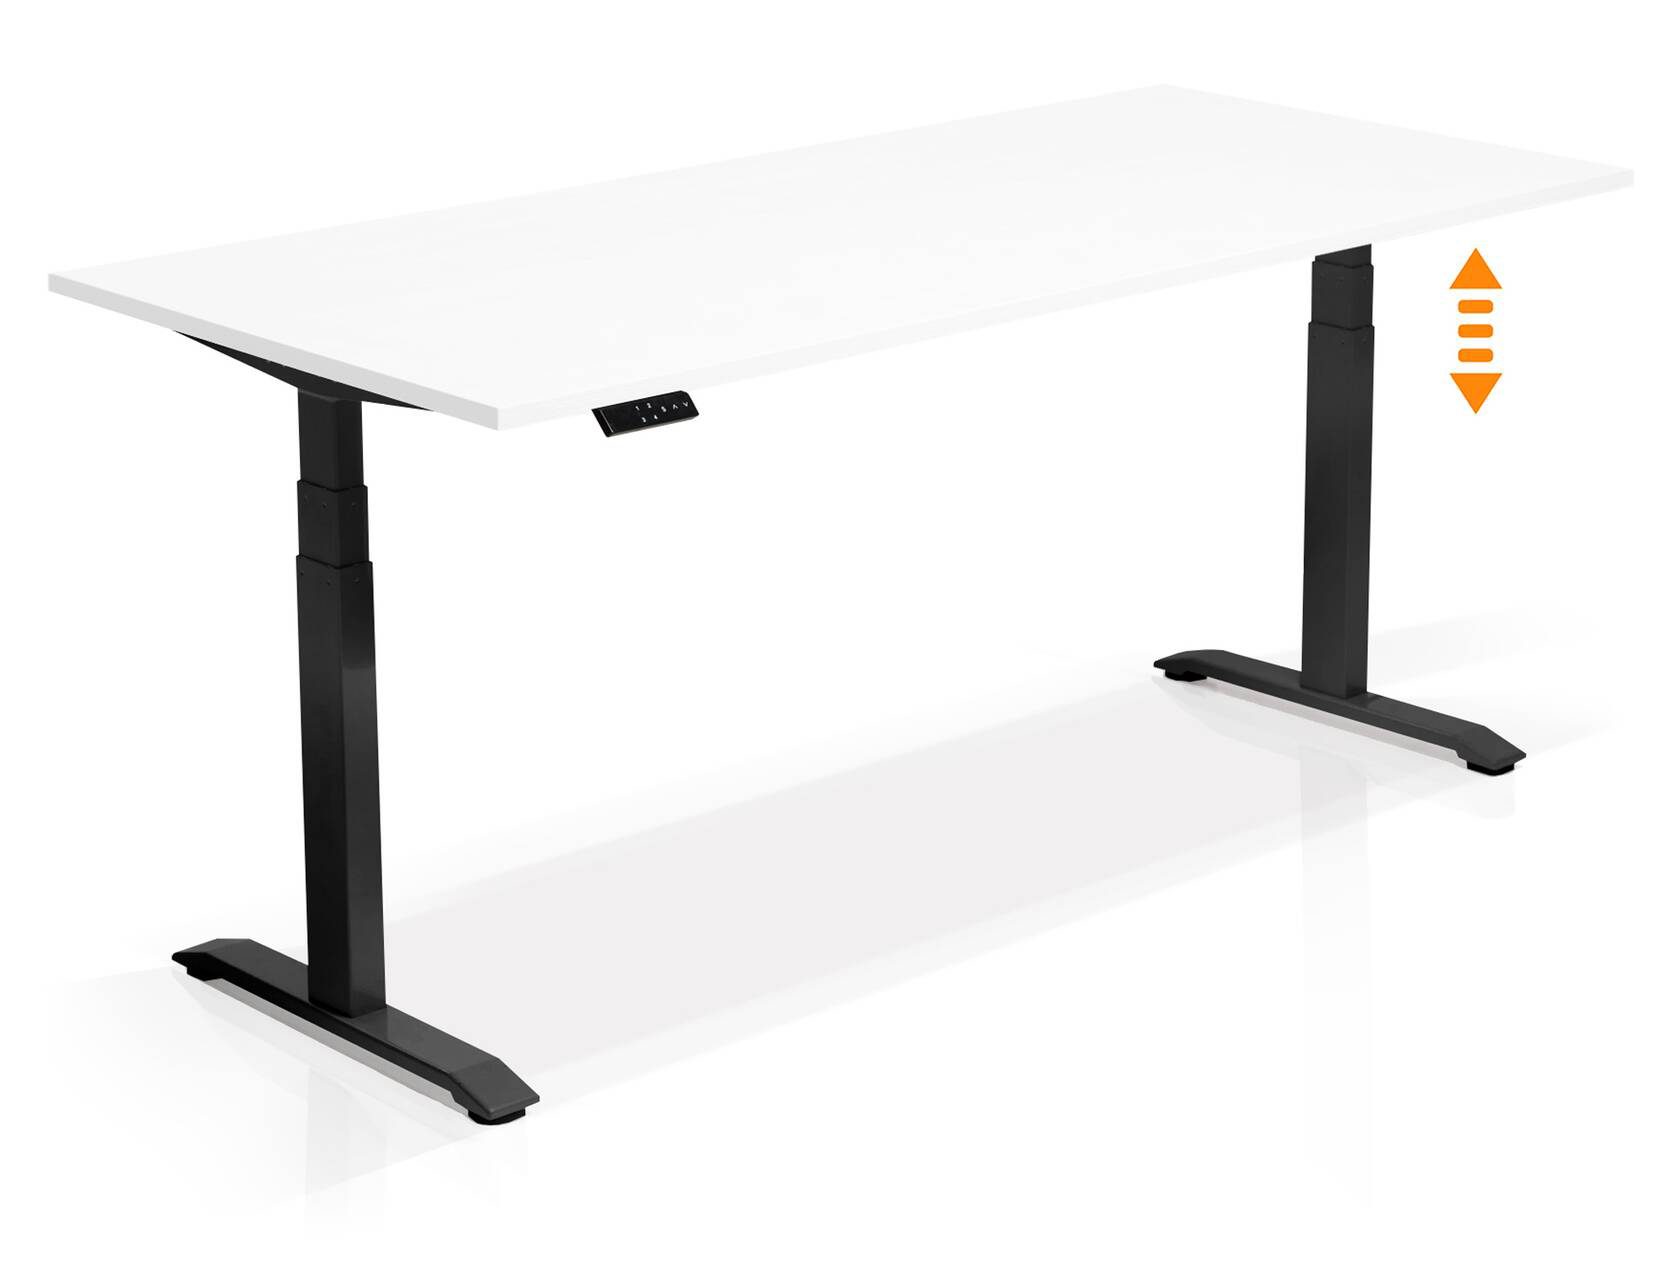 Hoehenverstellbarer Schreibtisch “WESW” von LHL in Modellvariante weisse PLatte schwarzes Gestell bei LHL im Onlineshop kaufen - Seitenansicht